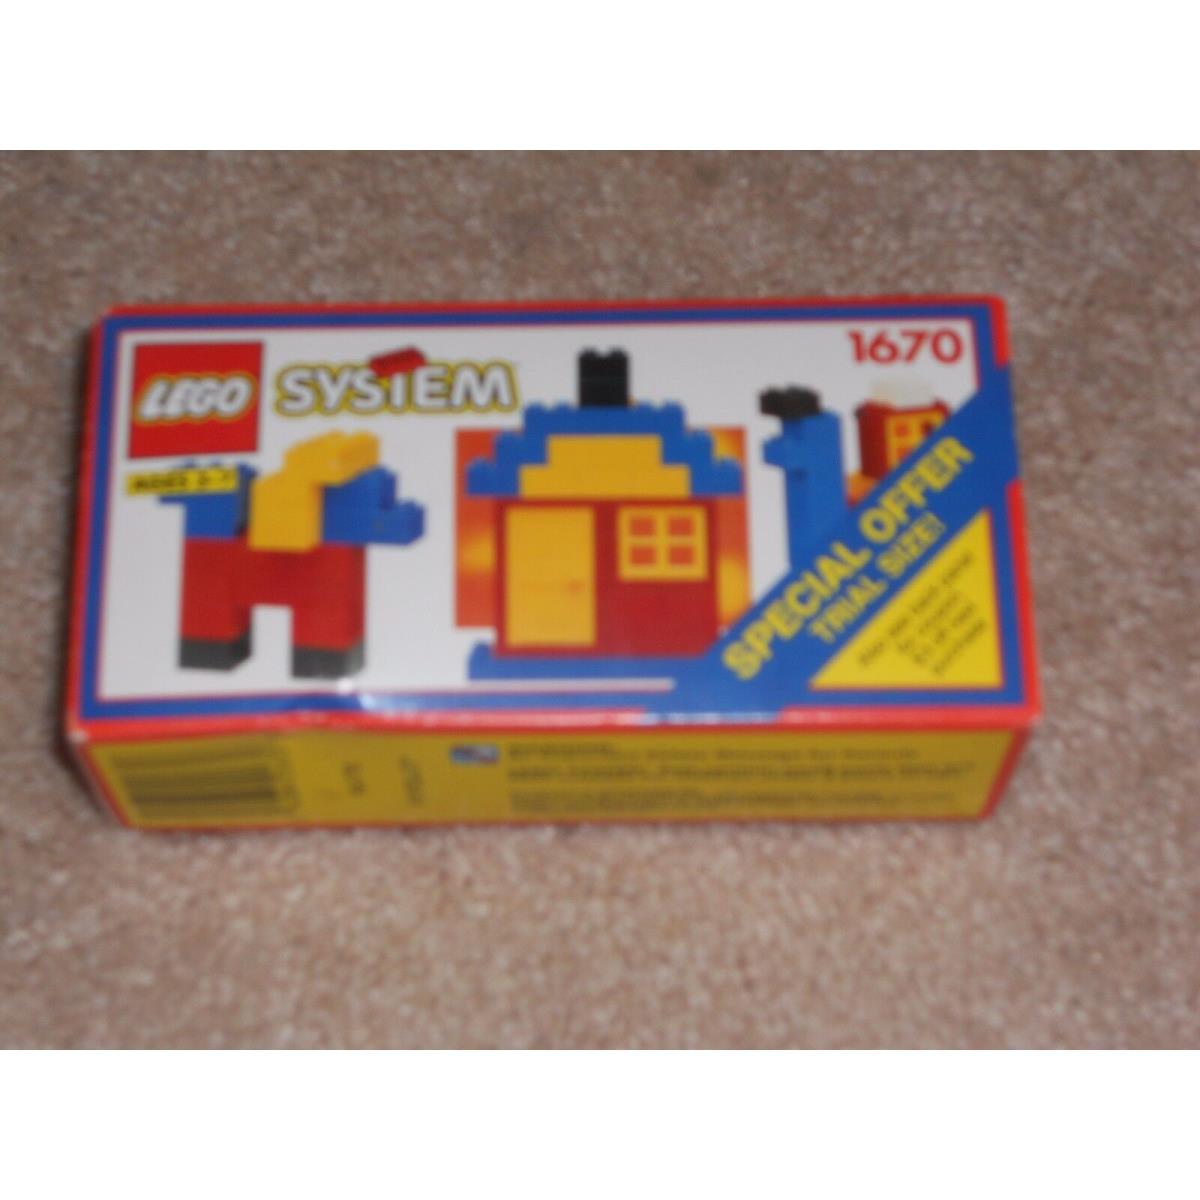 Lego System 1670 Vintage Set 1992